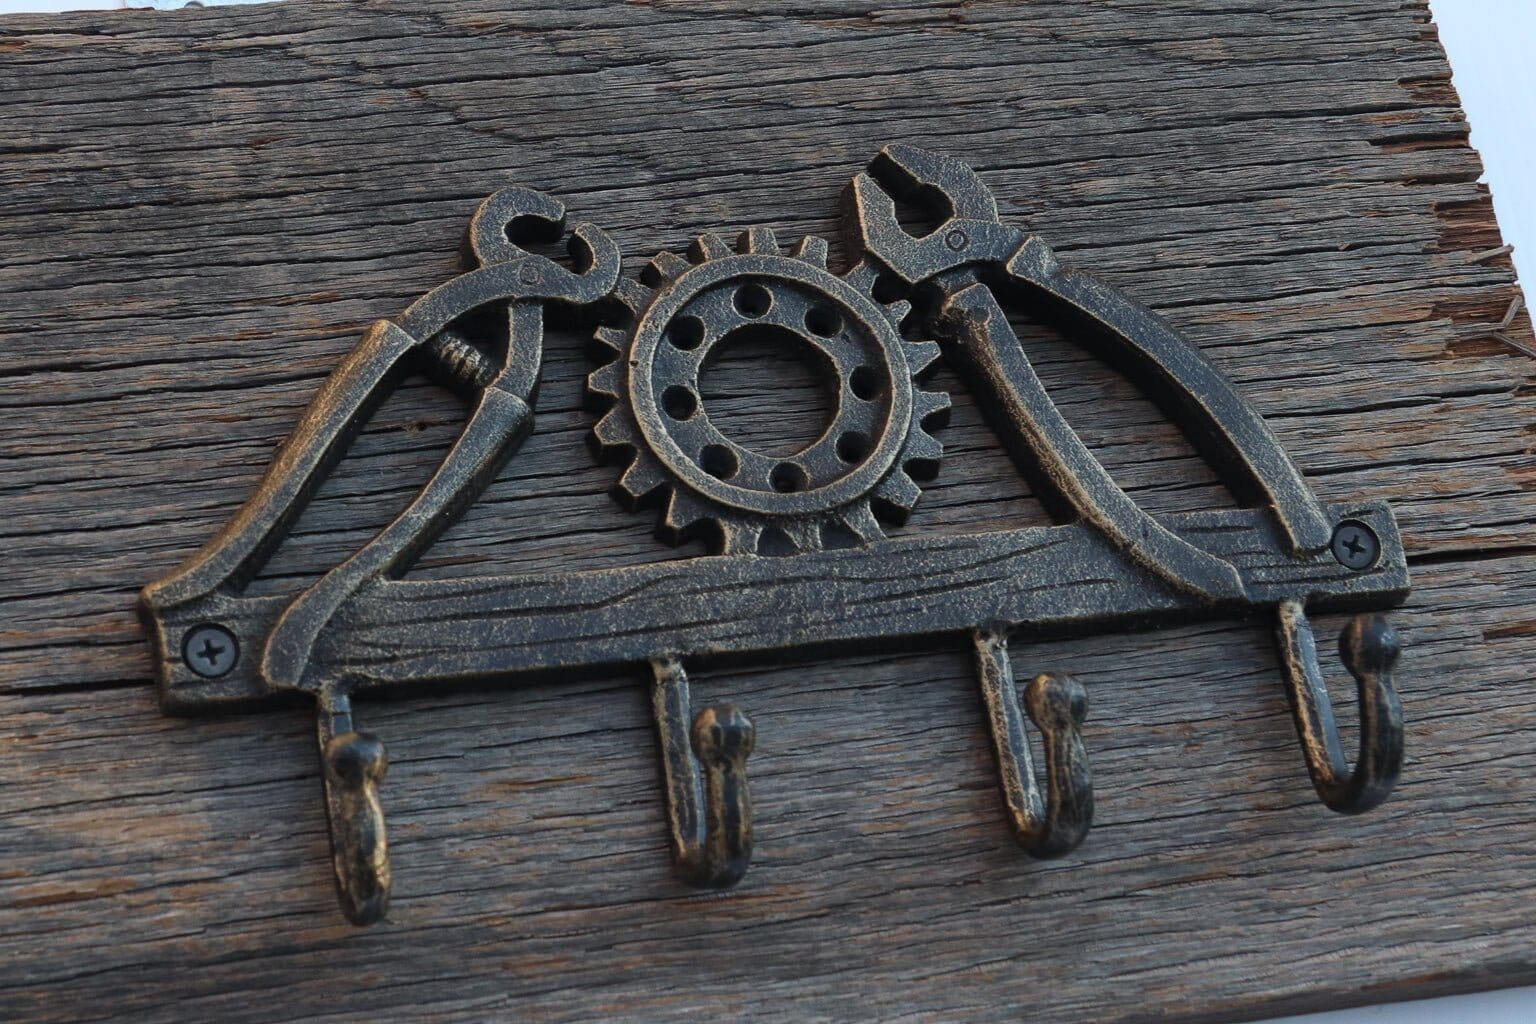 Antique Cast Iron Coat Hooks – Rustic Territory